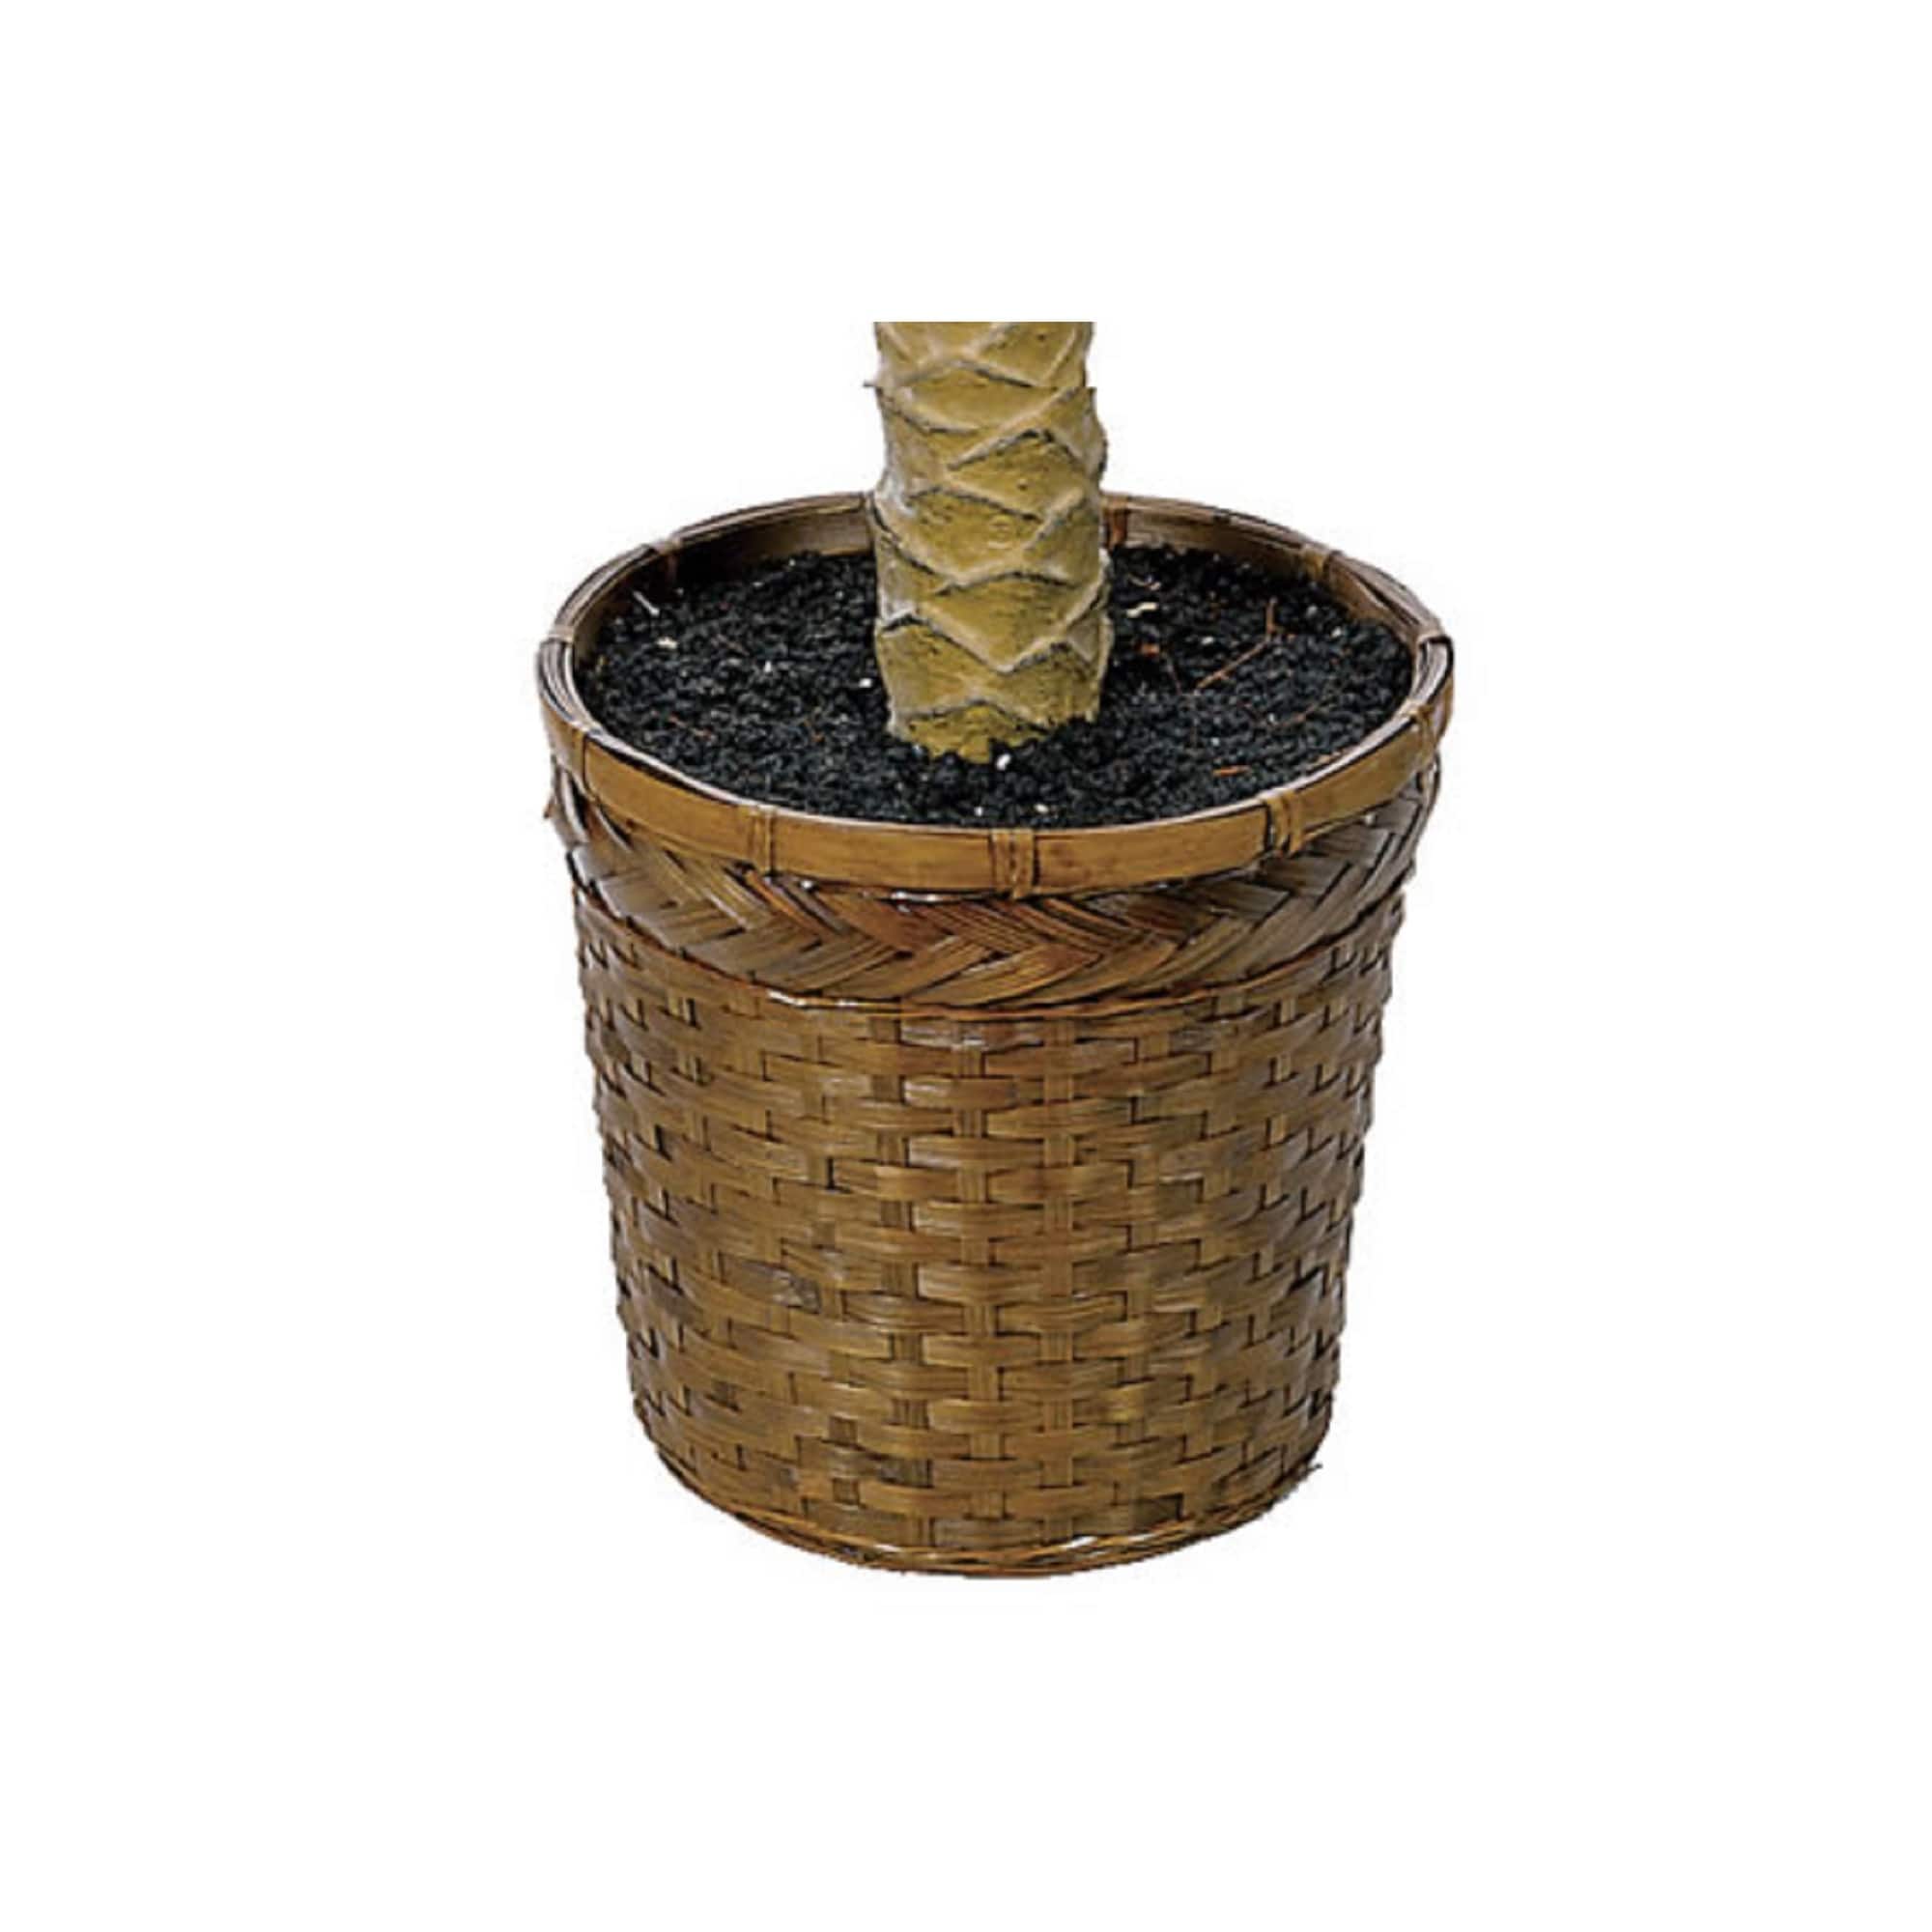 6ft. Sago Palm Tree in Wicker Basket Pot